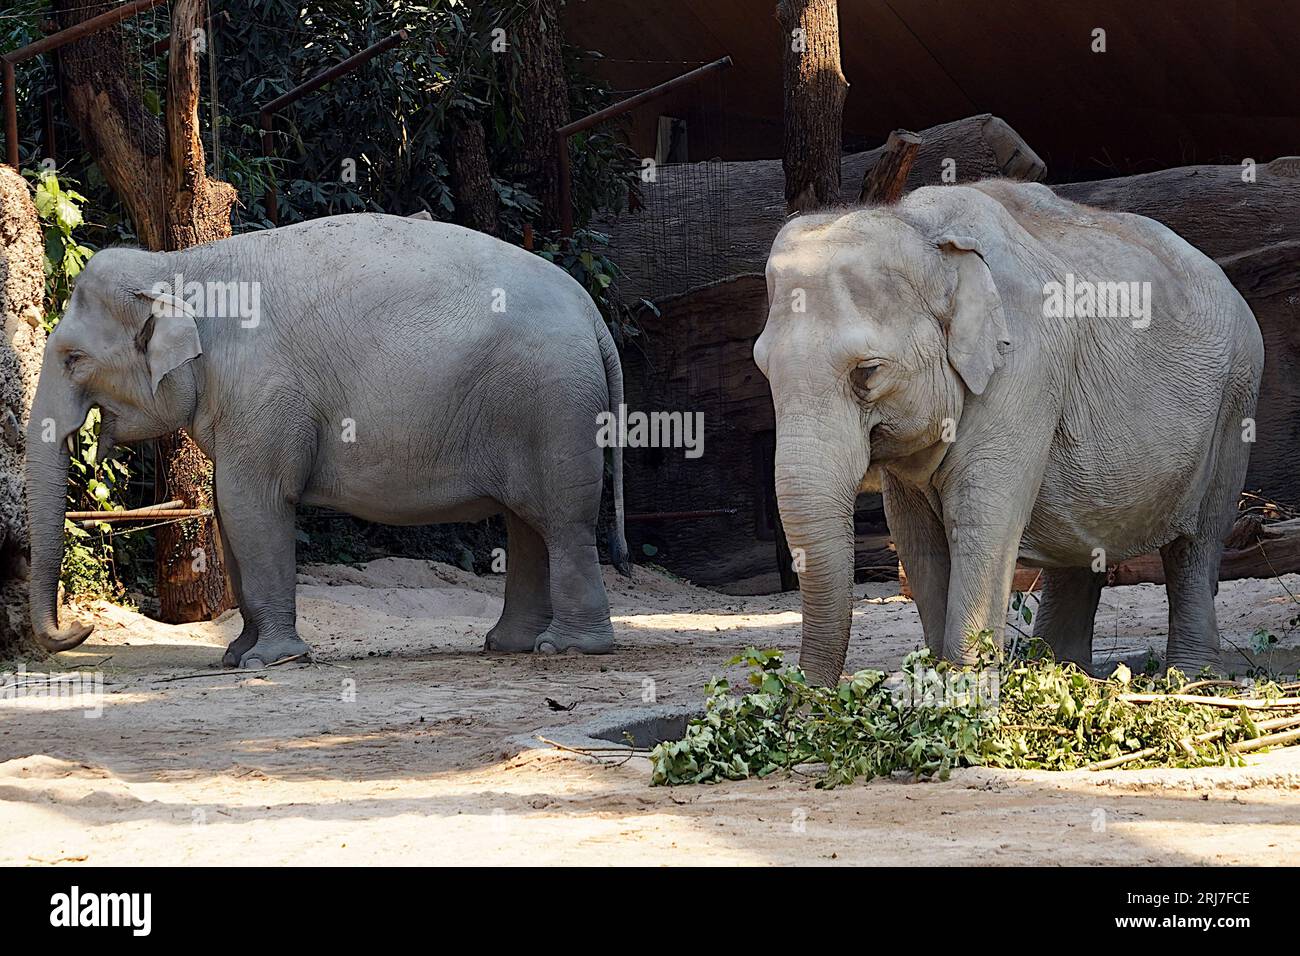 Deux éléphants indiens adultes en latin appelés Elephas maximus indicus vivant en captivité. Banque D'Images